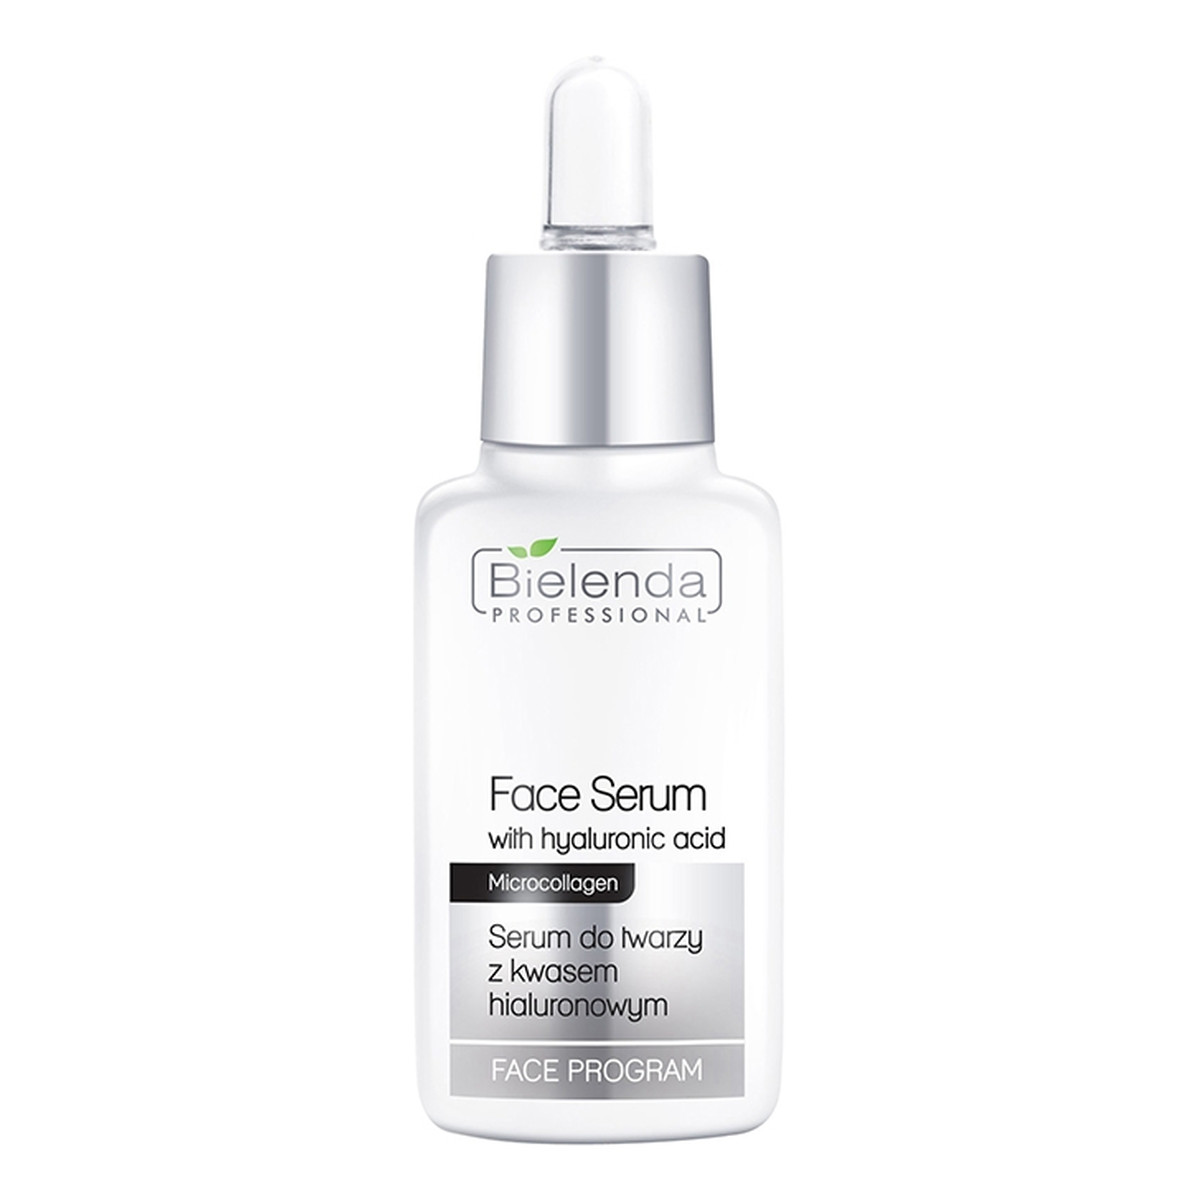 Bielenda Professional Face Program serum do twarzy z kwasem hialuronowym 30ml